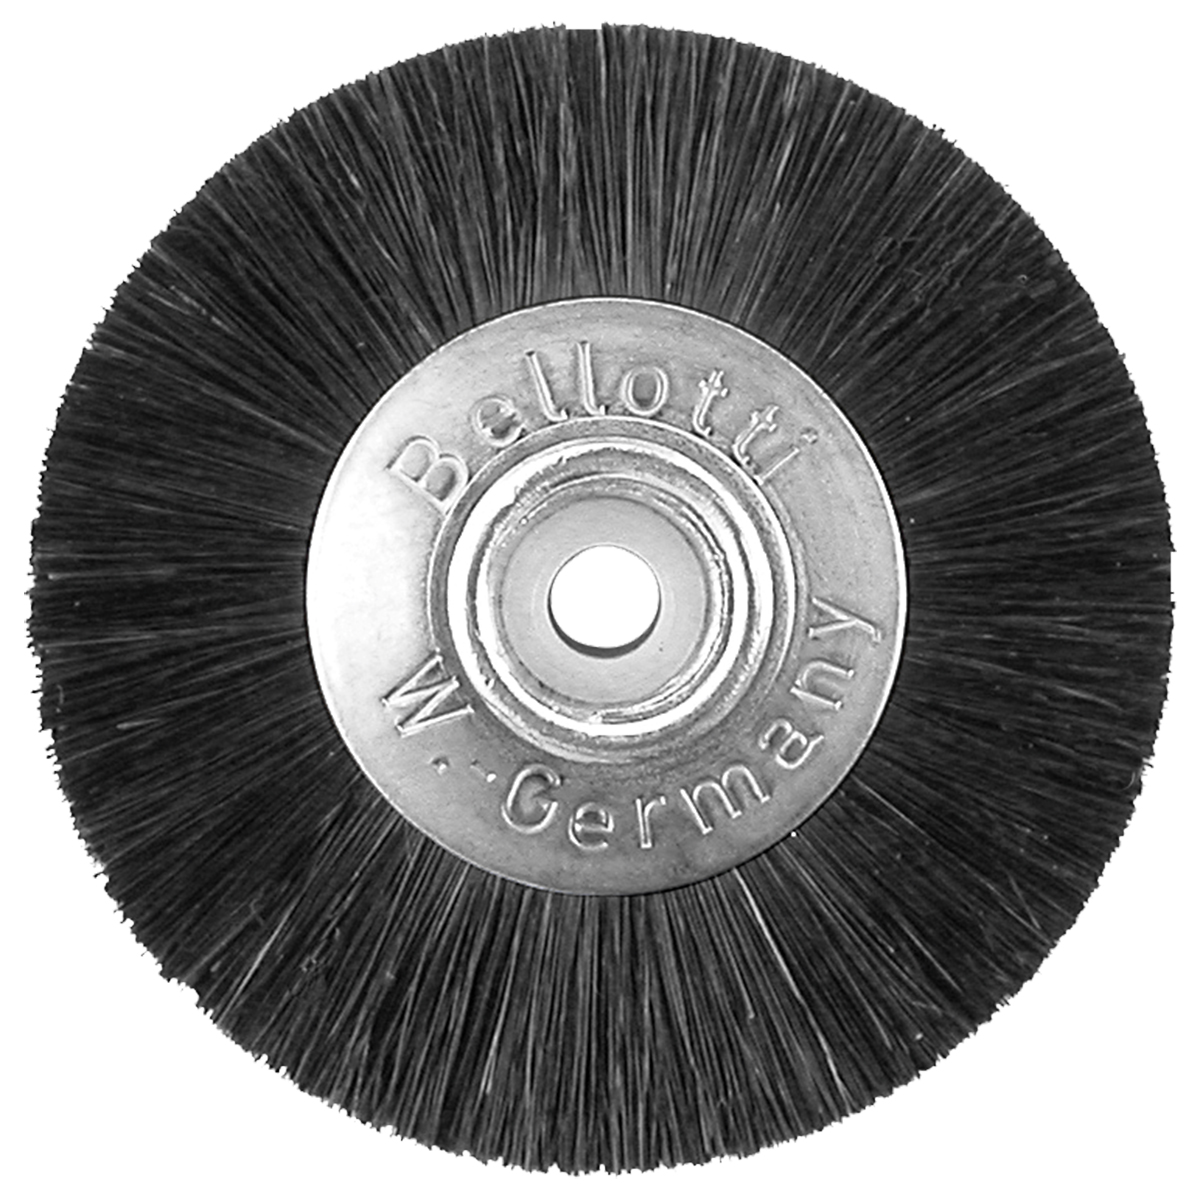 Brosse circulaire poils noirs 49 mm centre en métal et plastique